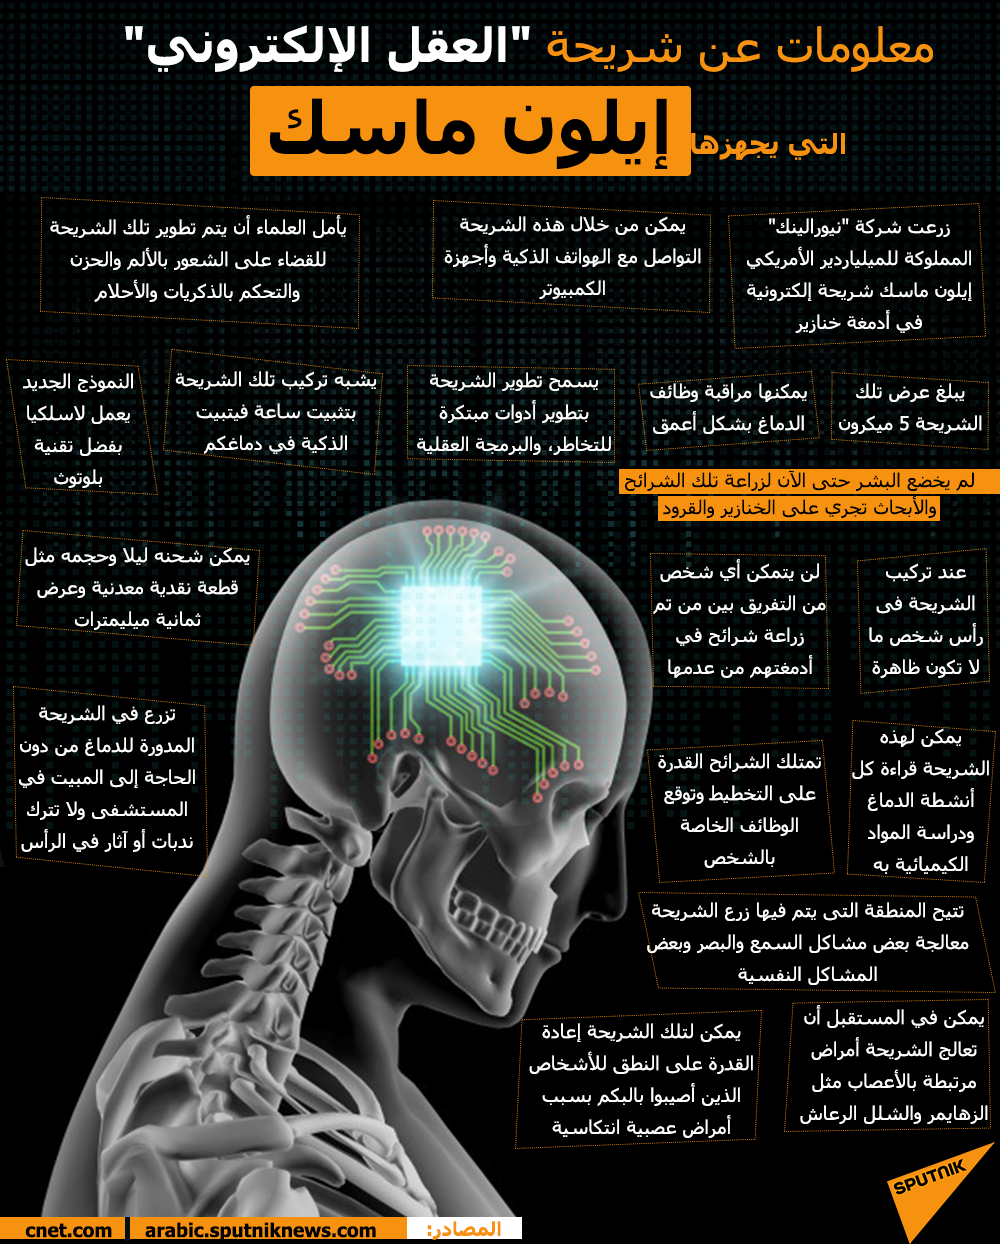 معلومات عن شريحة العقل الإلكتروني التي يجهزها إيلون ماسك - سبوتنيك عربي